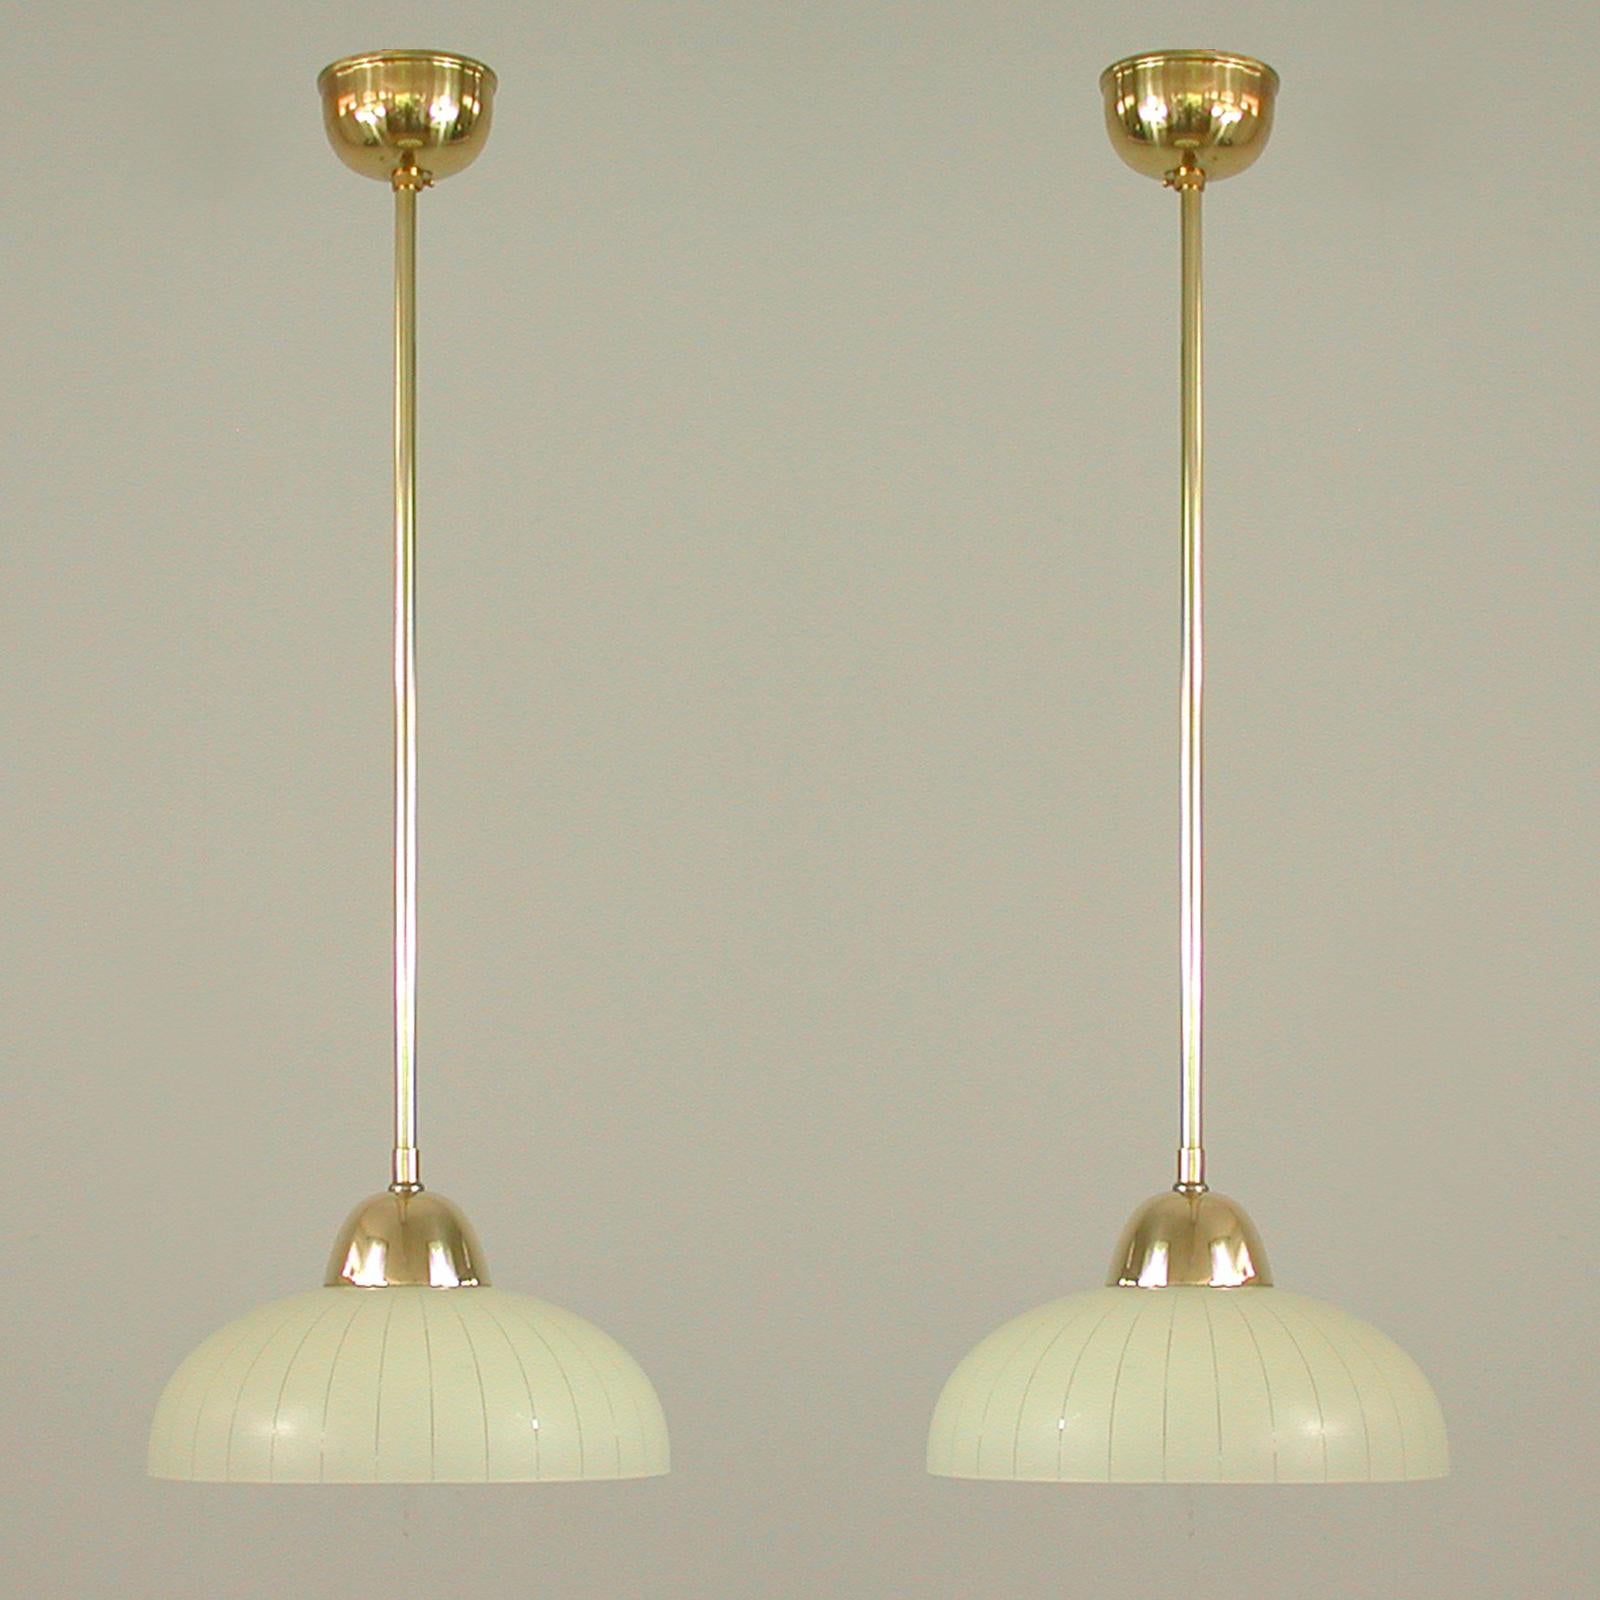 Diese eleganten, minimalistischen Pendelleuchten wurden in den 1940er bis 1950er Jahren in Schweden entworfen und hergestellt. 

Die Leuchten haben einen runden, cremefarbenen, gestreiften Glaslampenschirm und Messingbeschläge. Sie benötigen eine